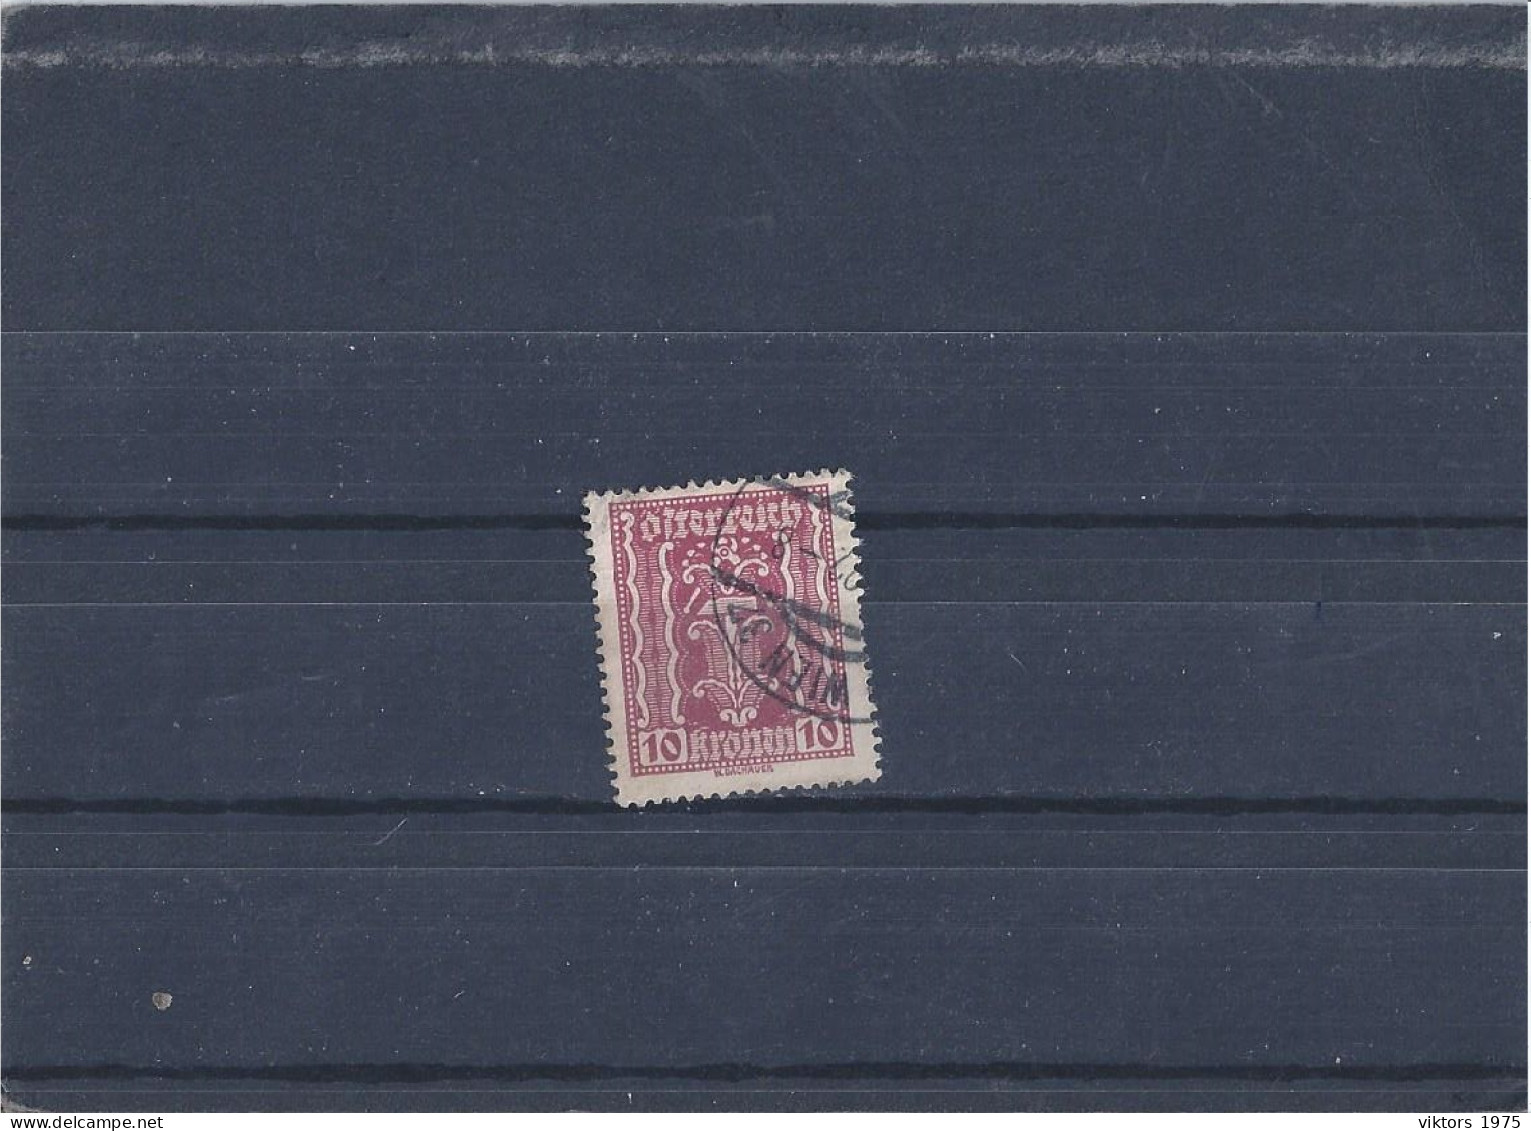 Used Stamp Nr.367 In MICHEL Catalog - Usati